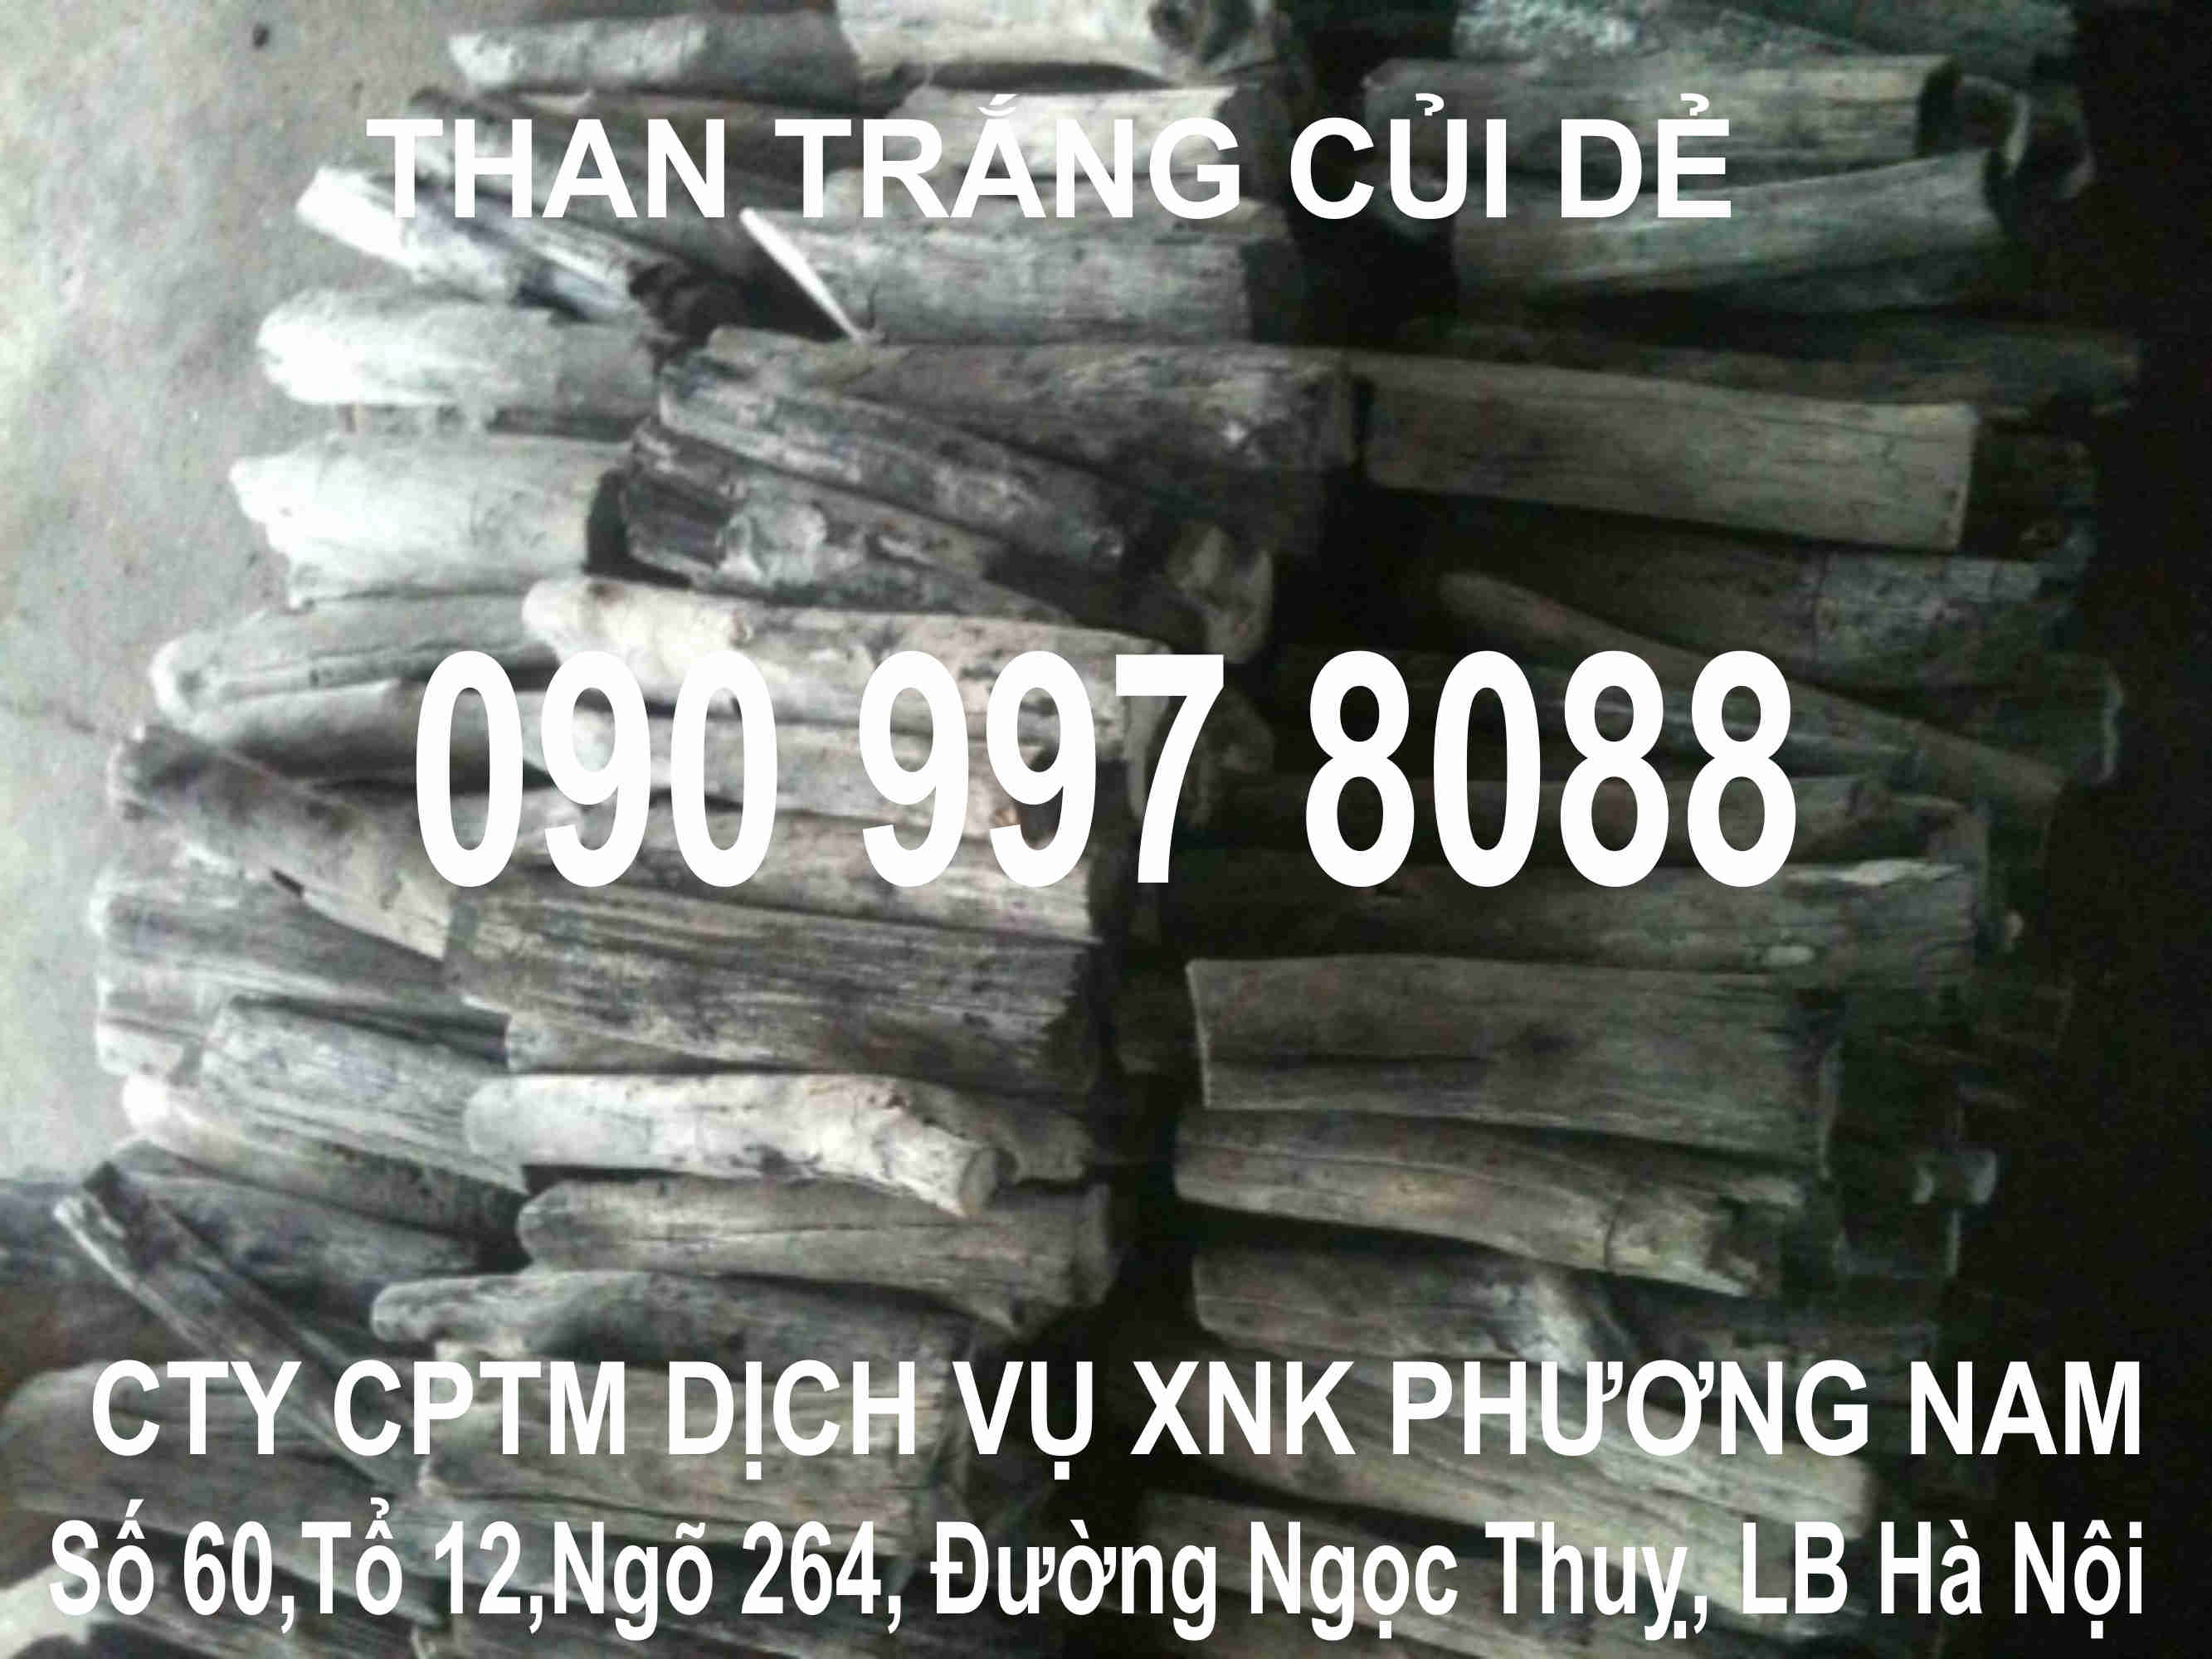 Than Trắng gỗ Vải 16.000-22.000đ/tấn giao ngay 100 tấn,Xuất xứ Việt Nam